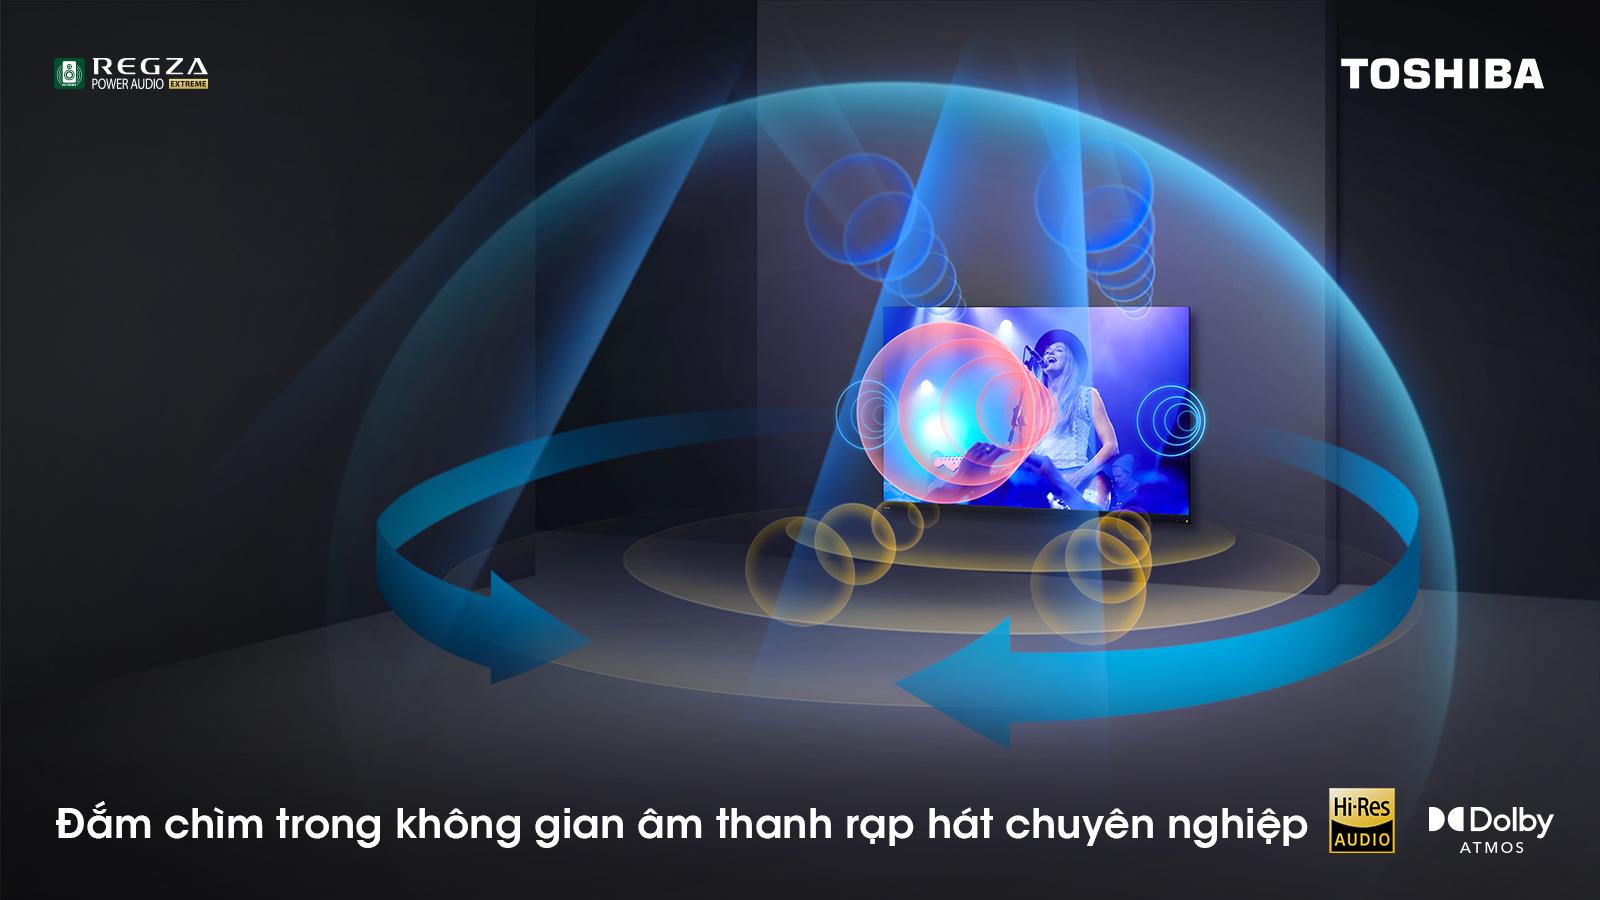 Toshiba TV Việt Nam ra mắt siêu phẩm Tivi thế hệ mới trước thềm FIFA World Cup Qatar 2022™ - Ảnh 2.